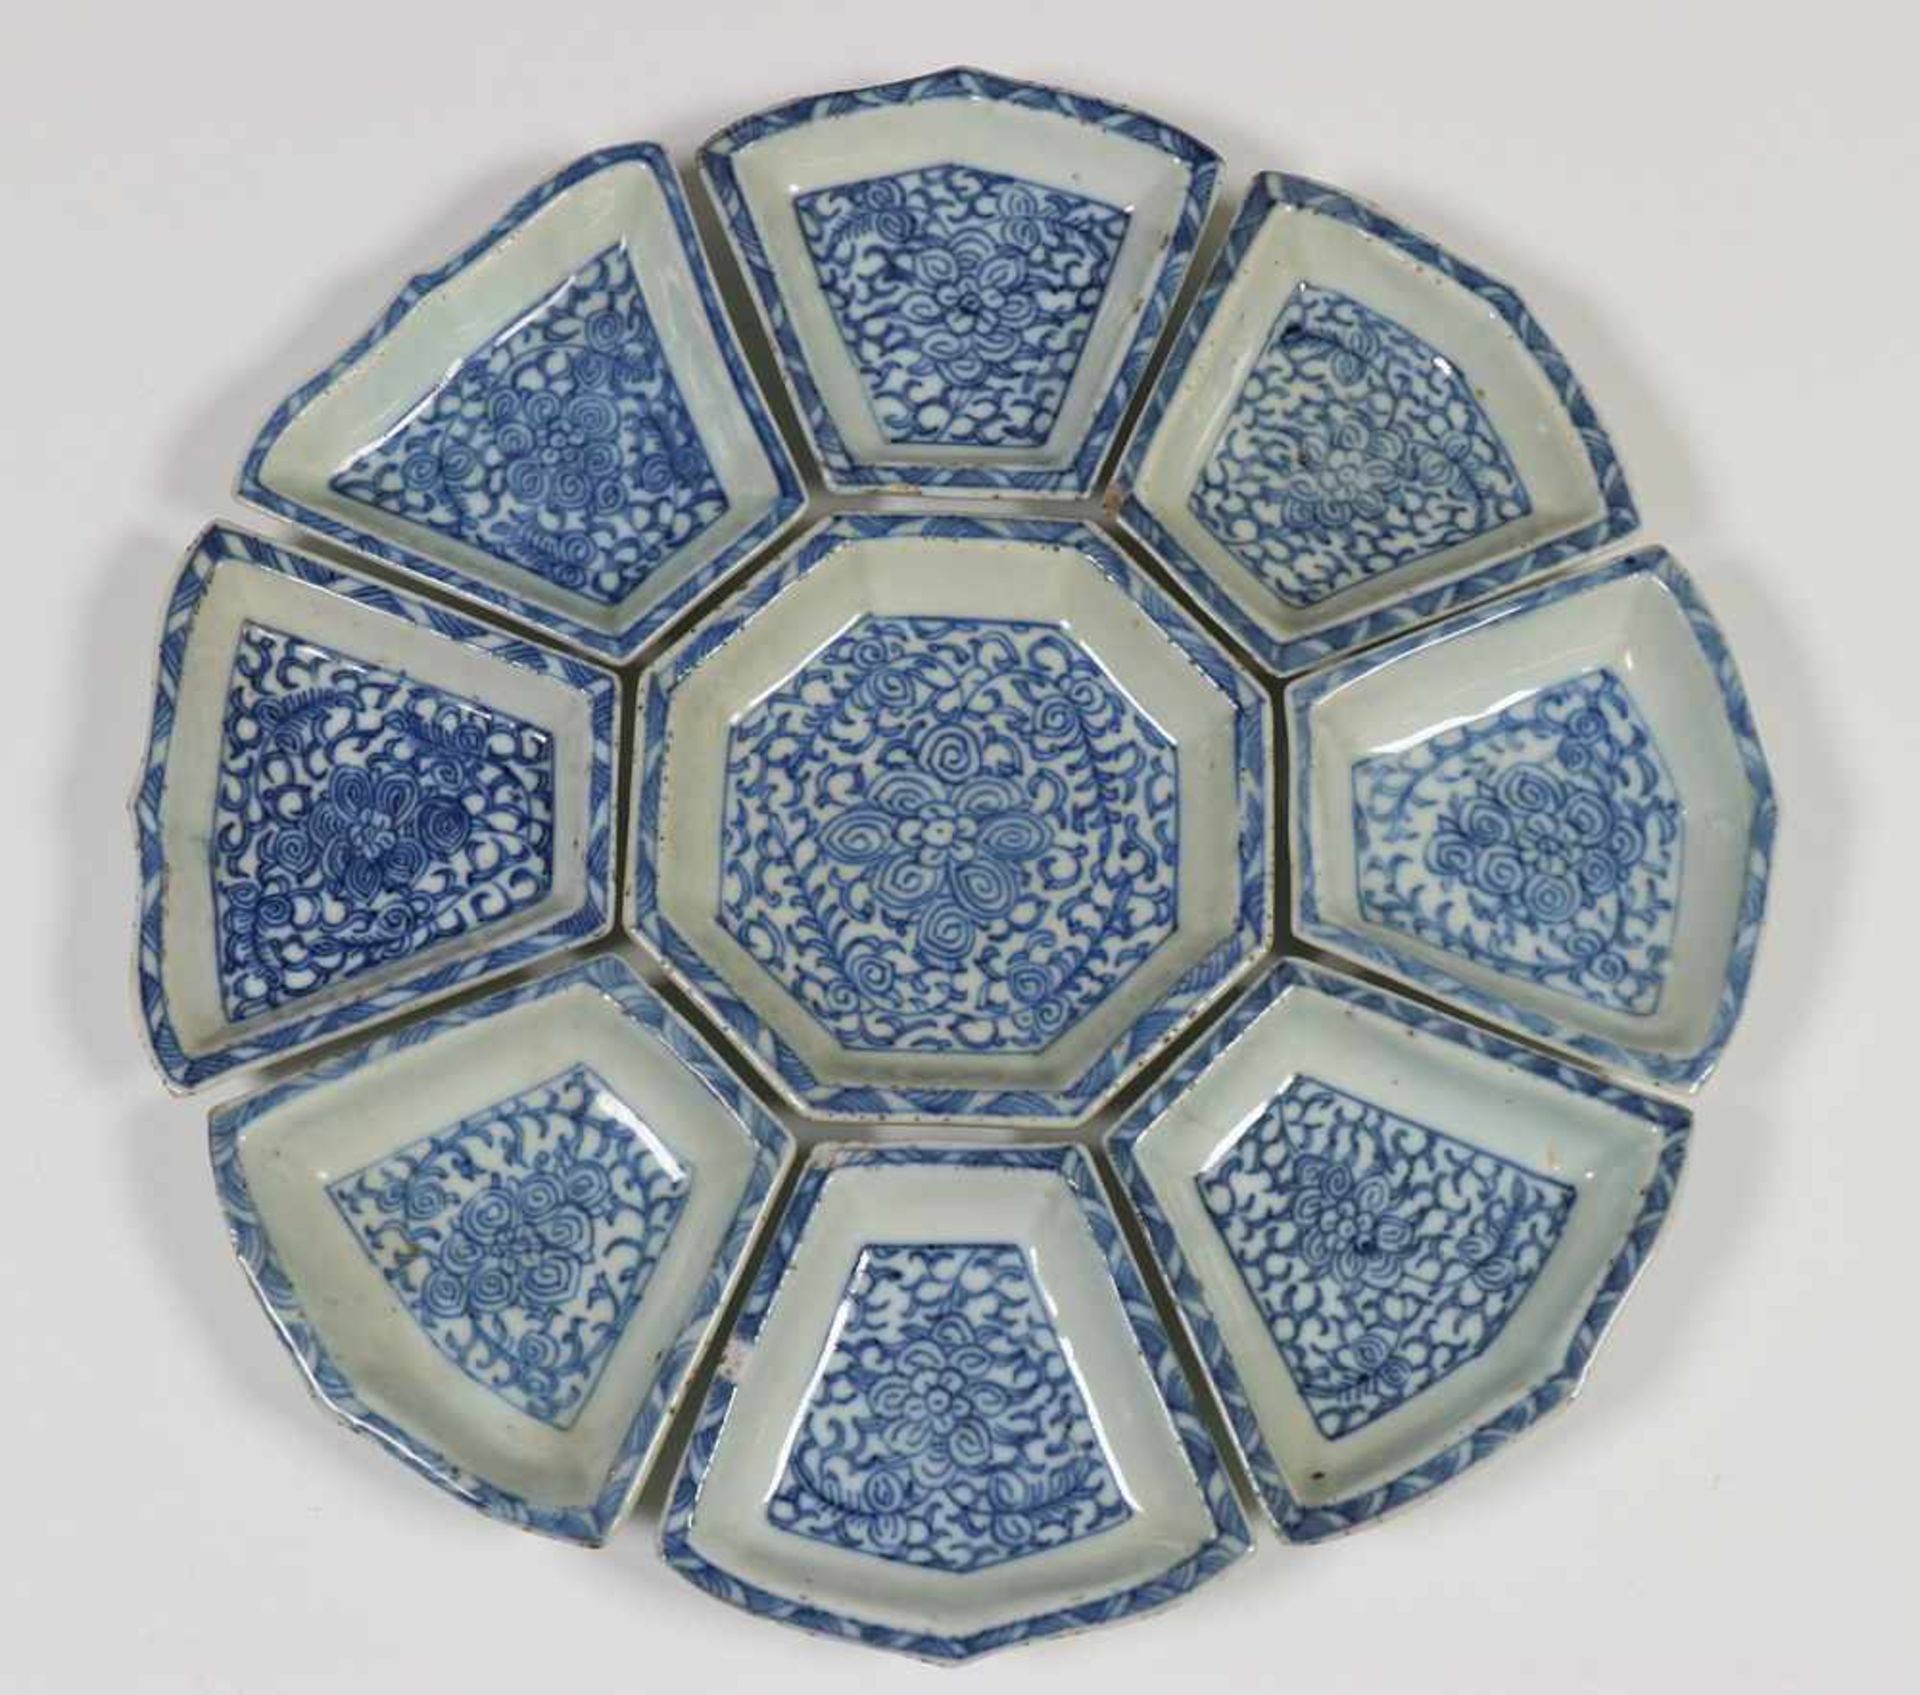 China, blauw-wit porseleinen hors d'oeuvregarnituur en drie theebussen, 19e eeuw(twee van